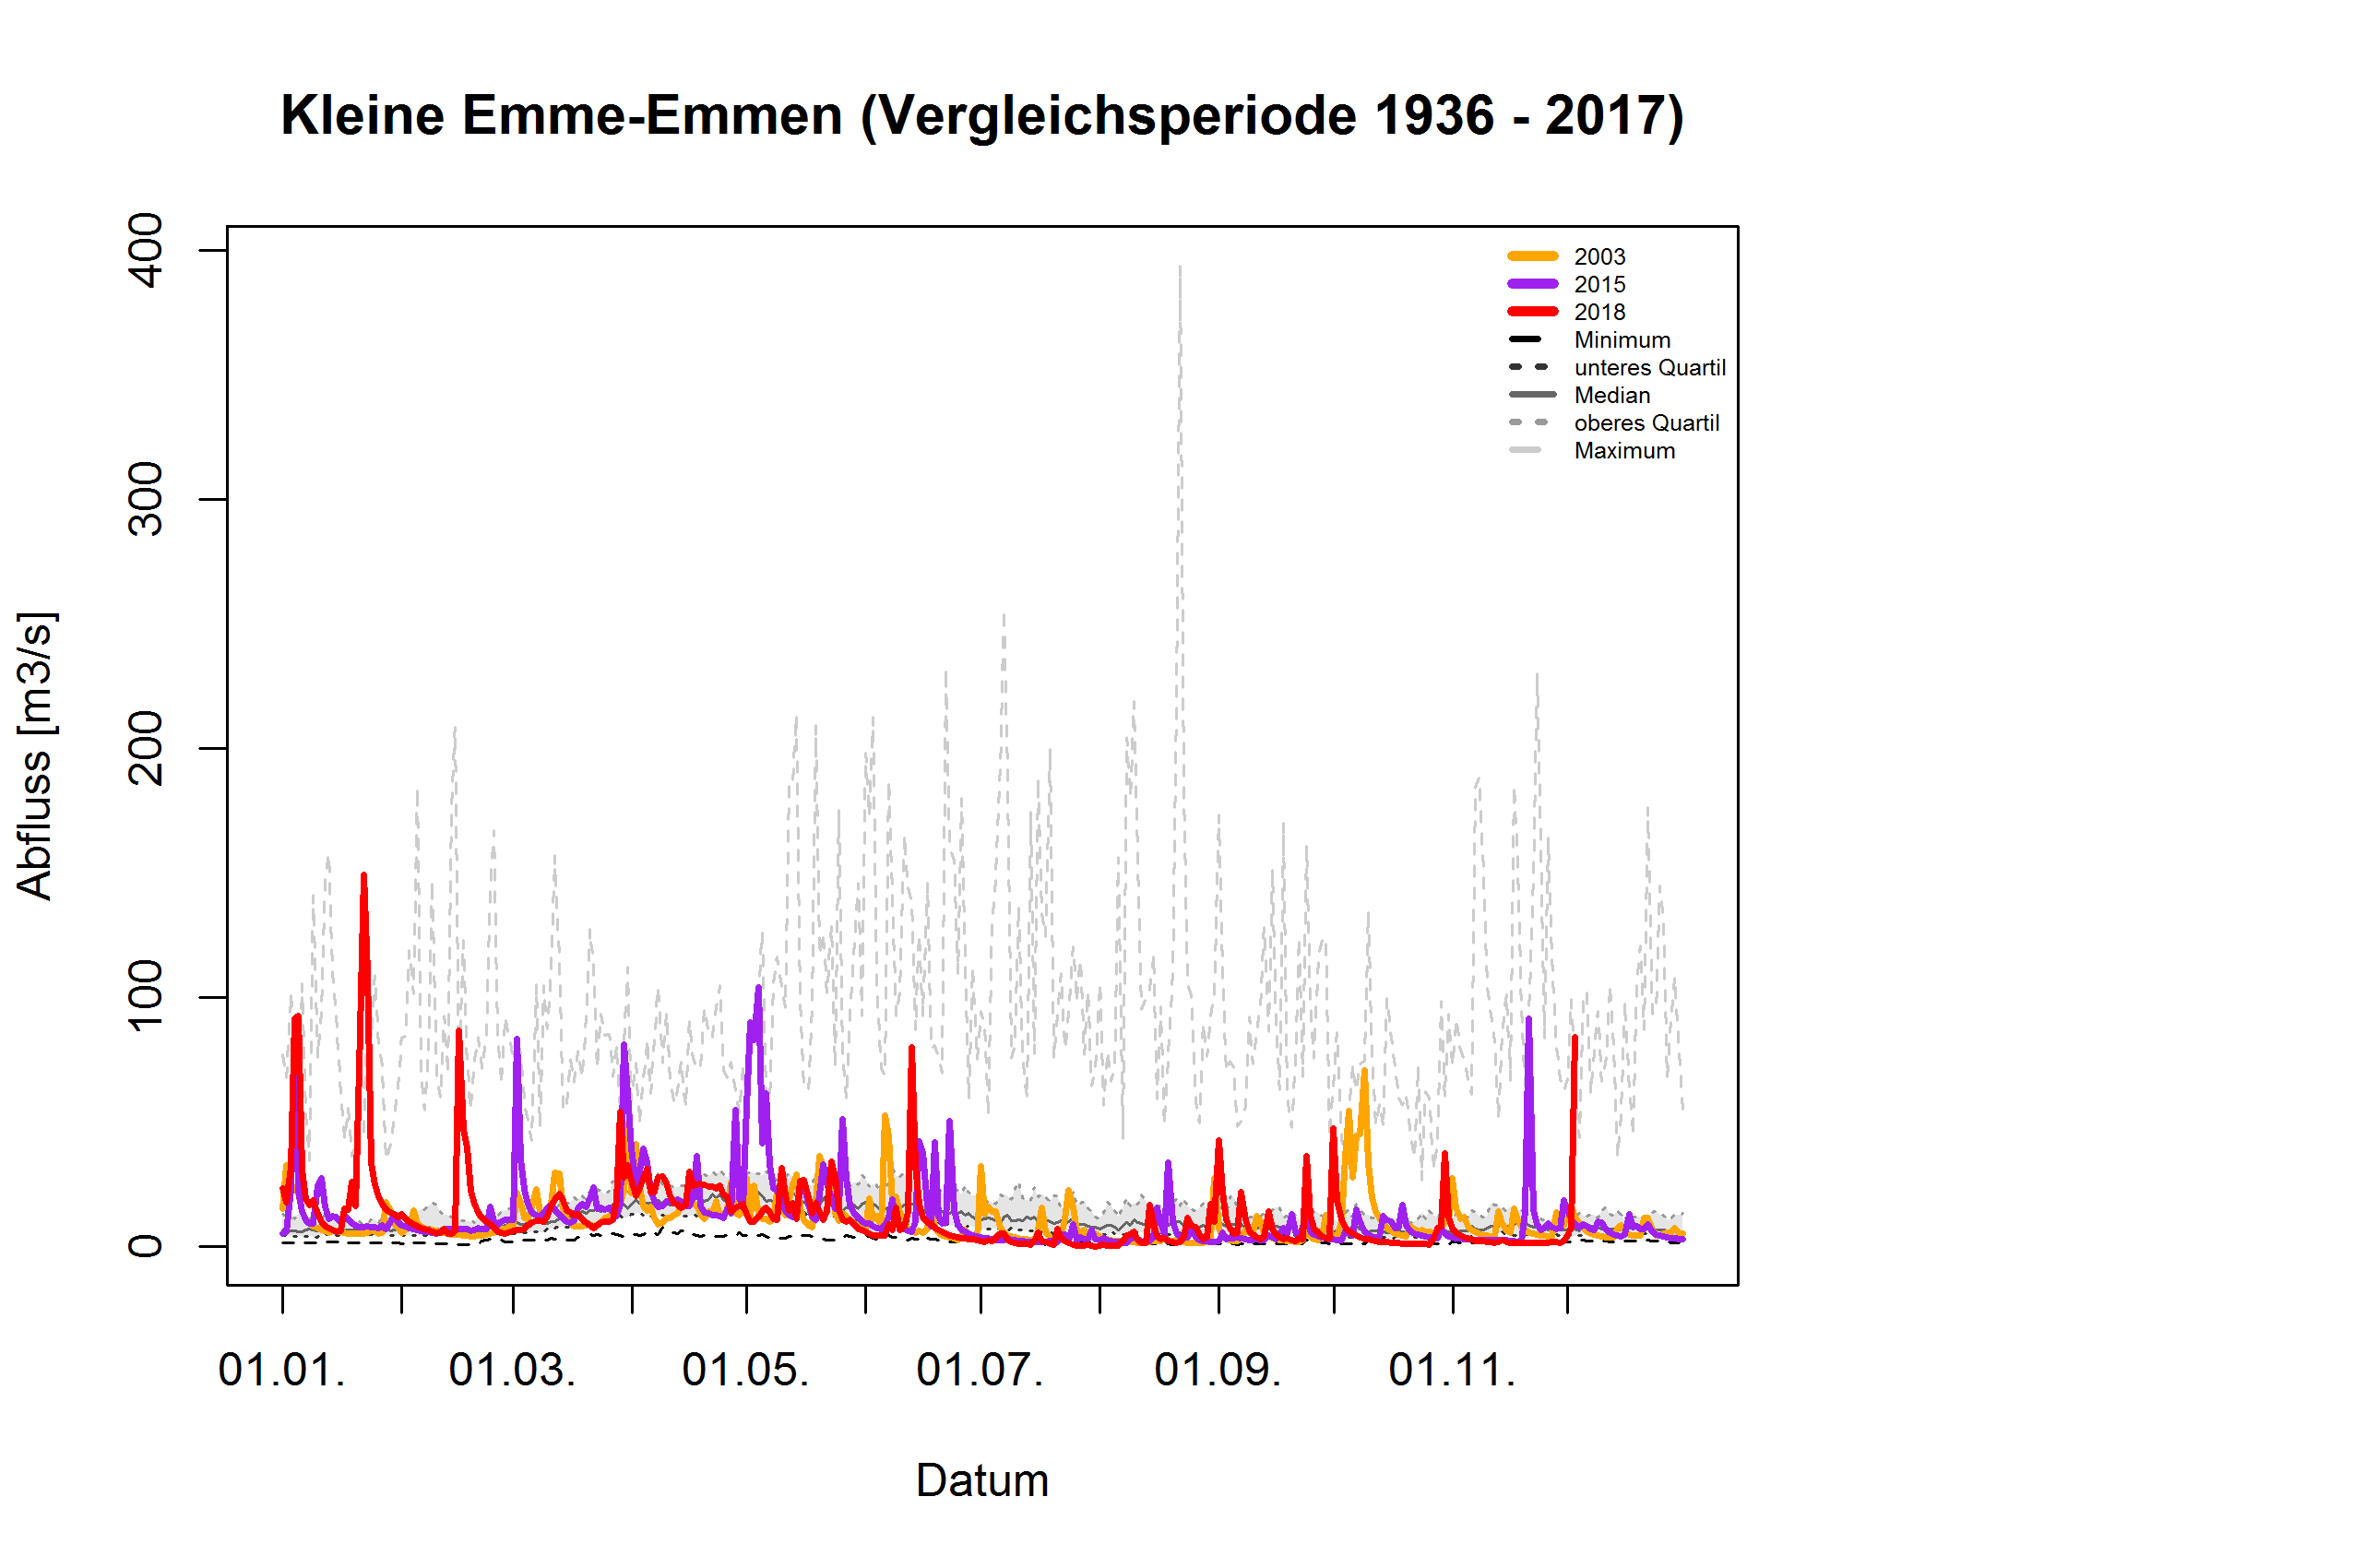 Kleine Emme - Emmen: Vergleichsperiode 1936 - 2017